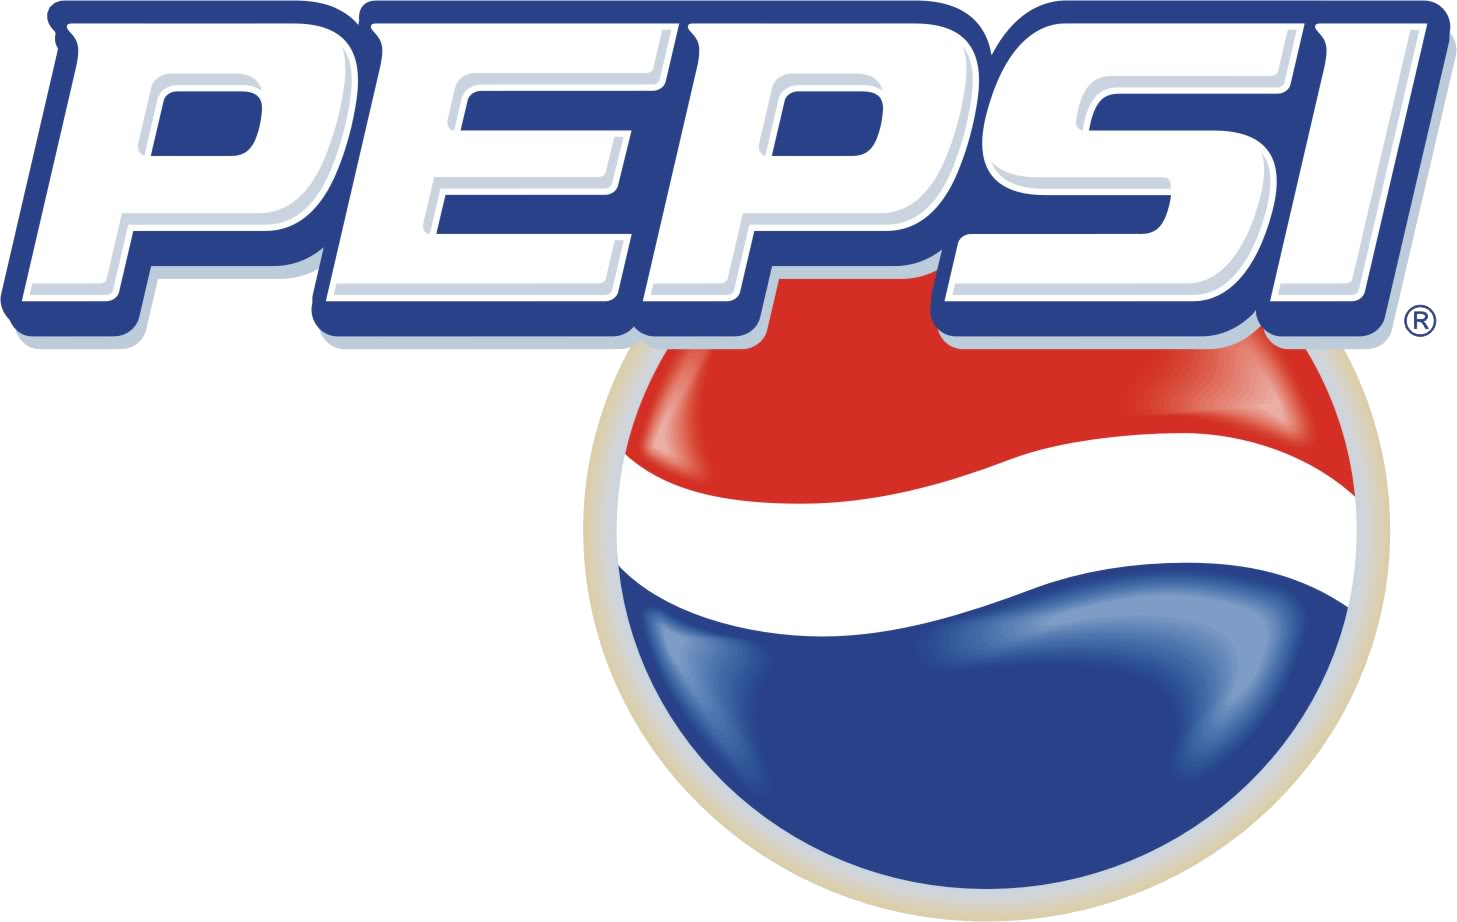 Pepsi logo clipart